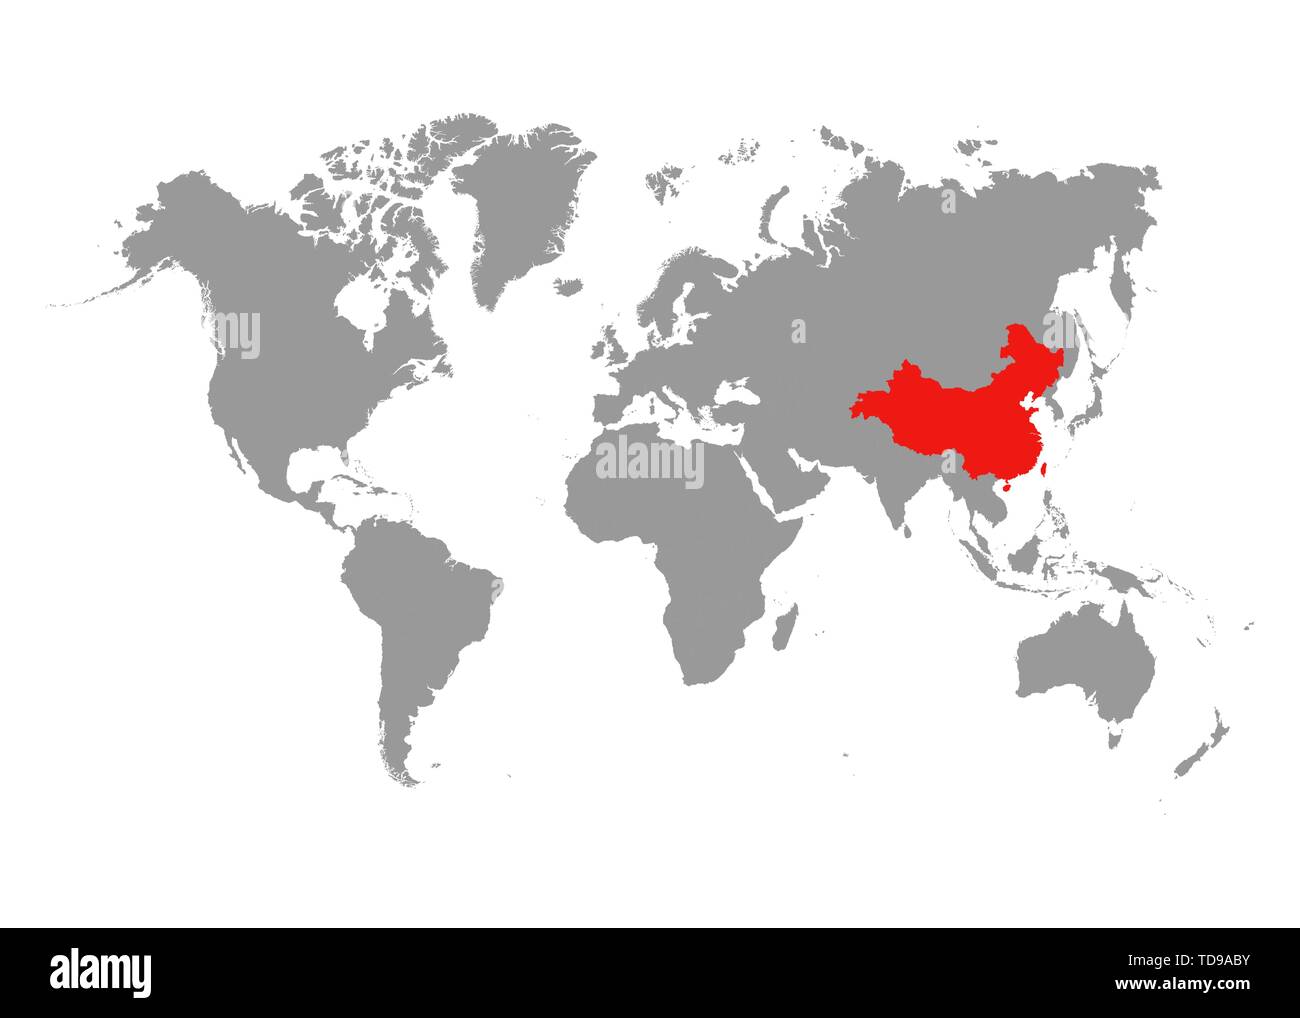 La mappa della Cina è evidenziata in rosso sulla mappa del mondo. Vettore Illustrazione Vettoriale